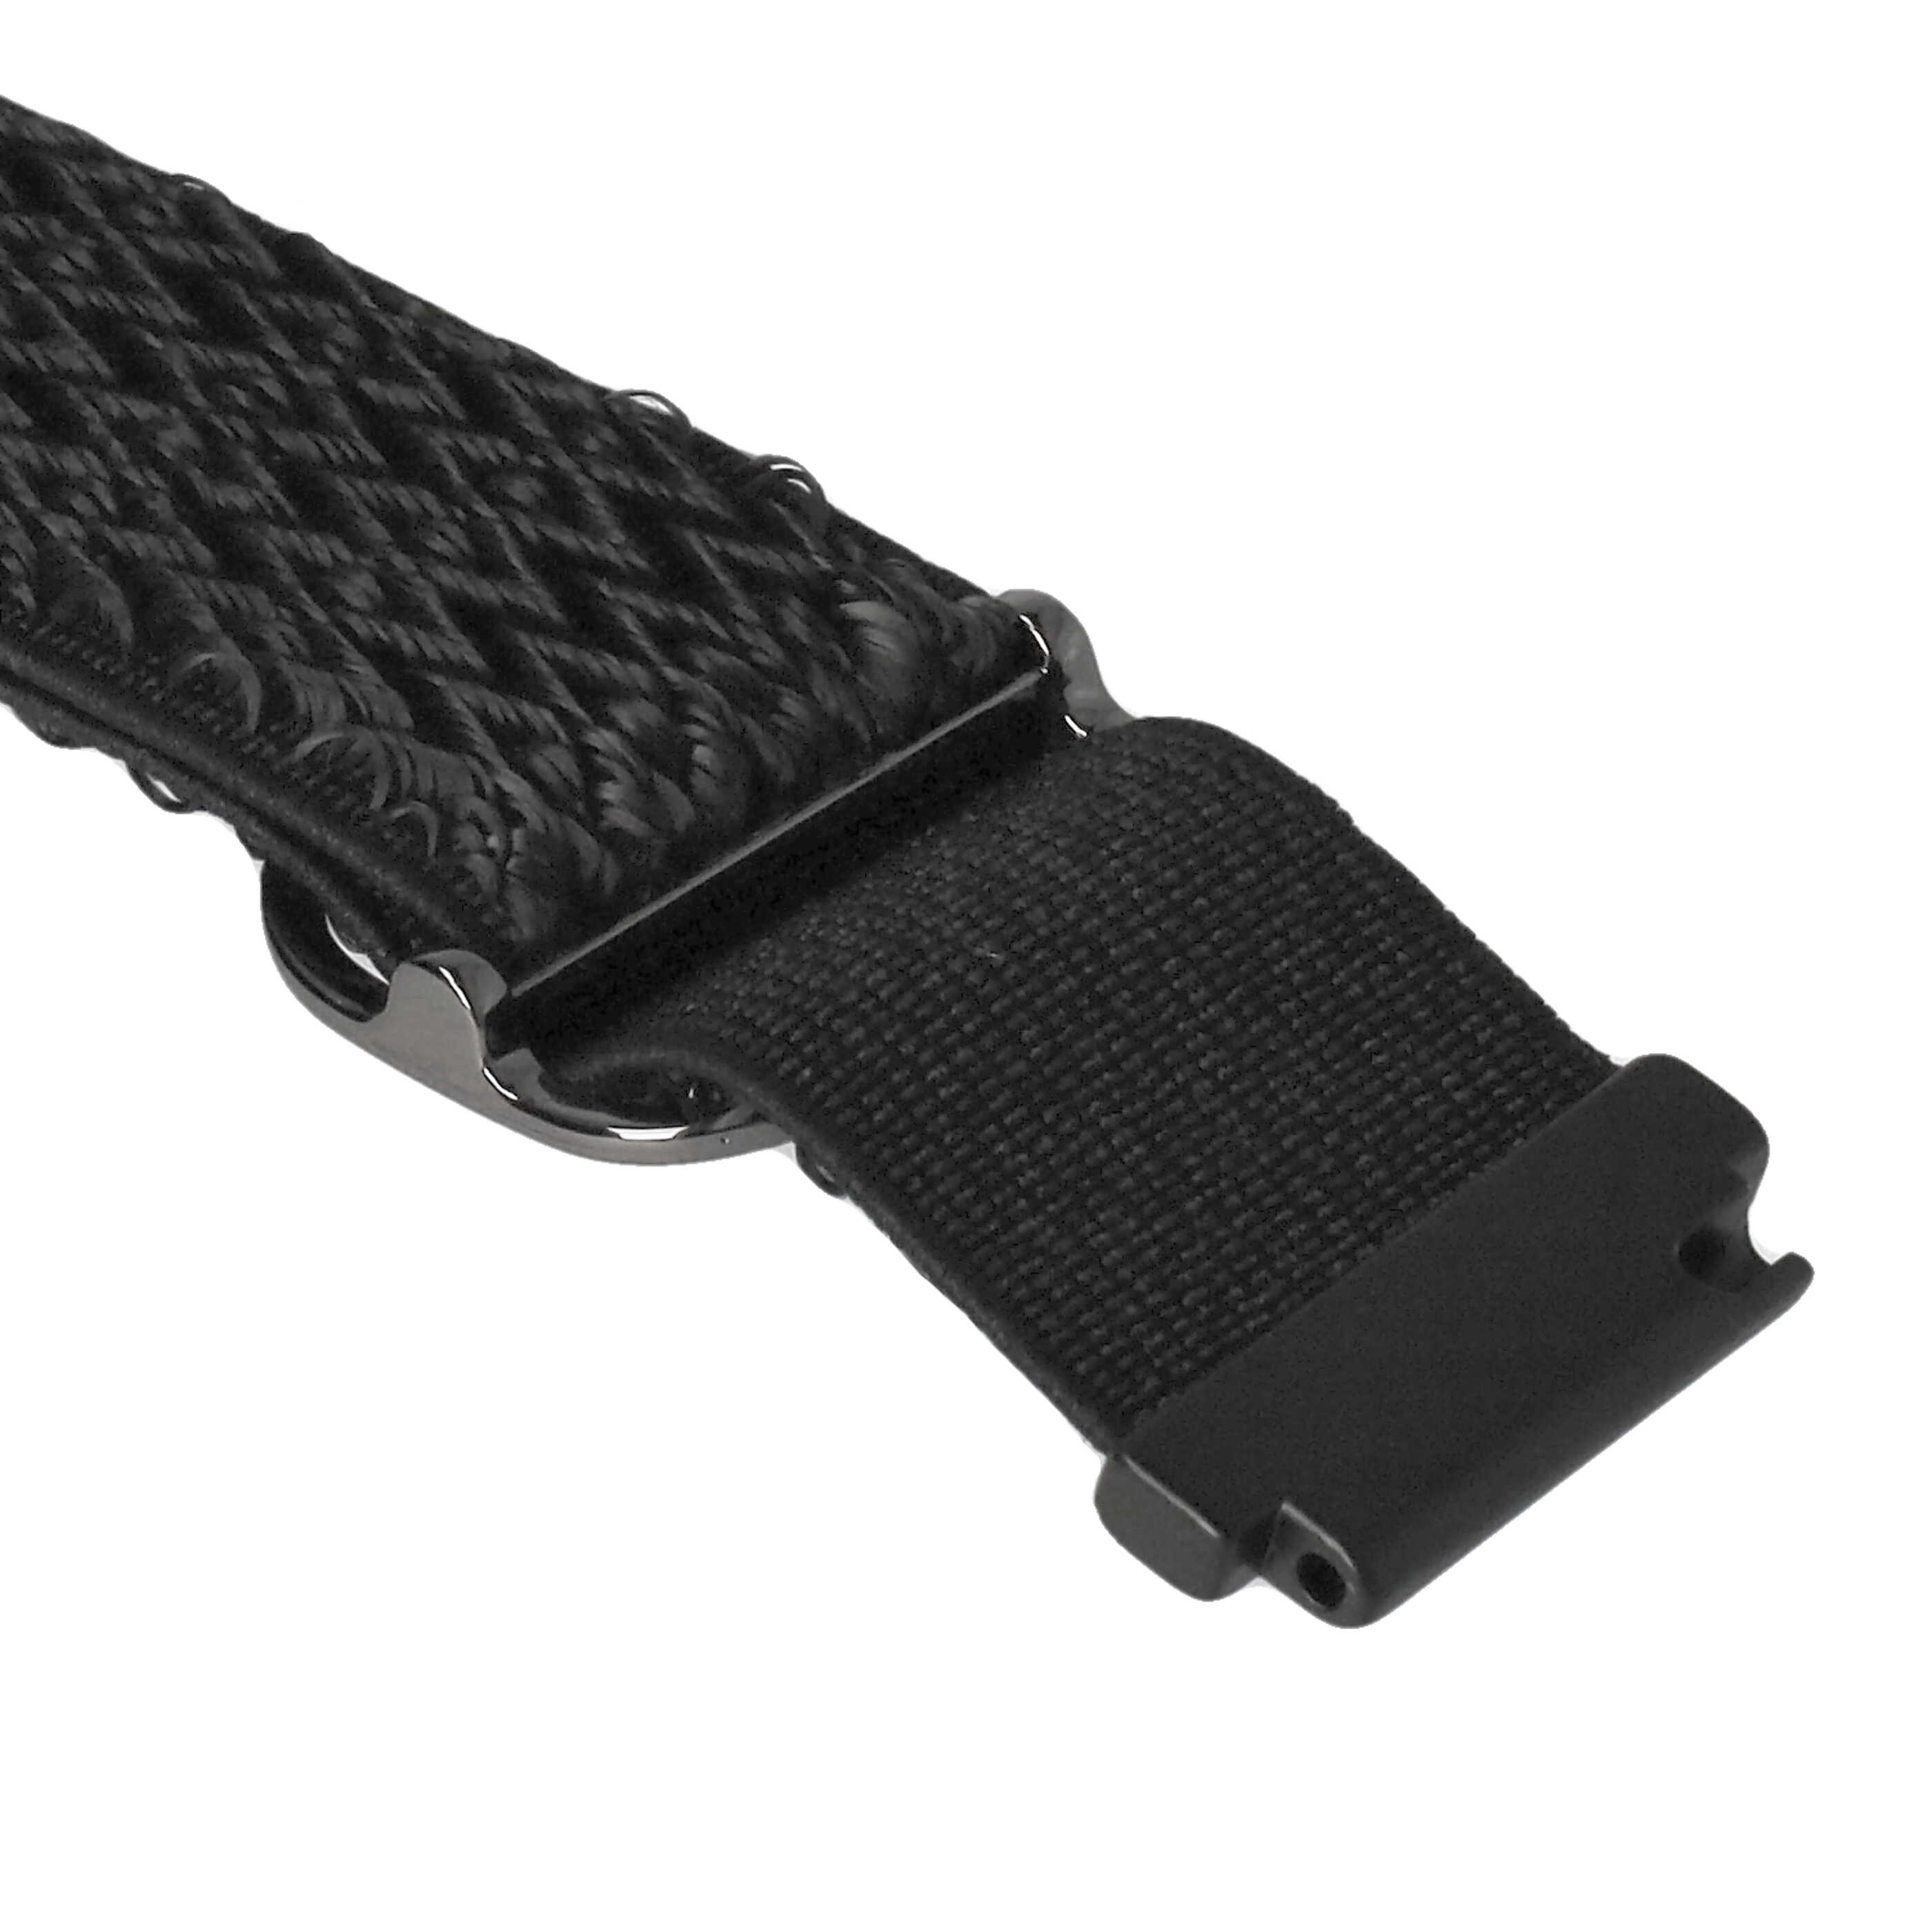 Schnellspanner Armband für Samsung Galaxy Smartwatch - 21 x 2,2 cm, Nylon, schwarz